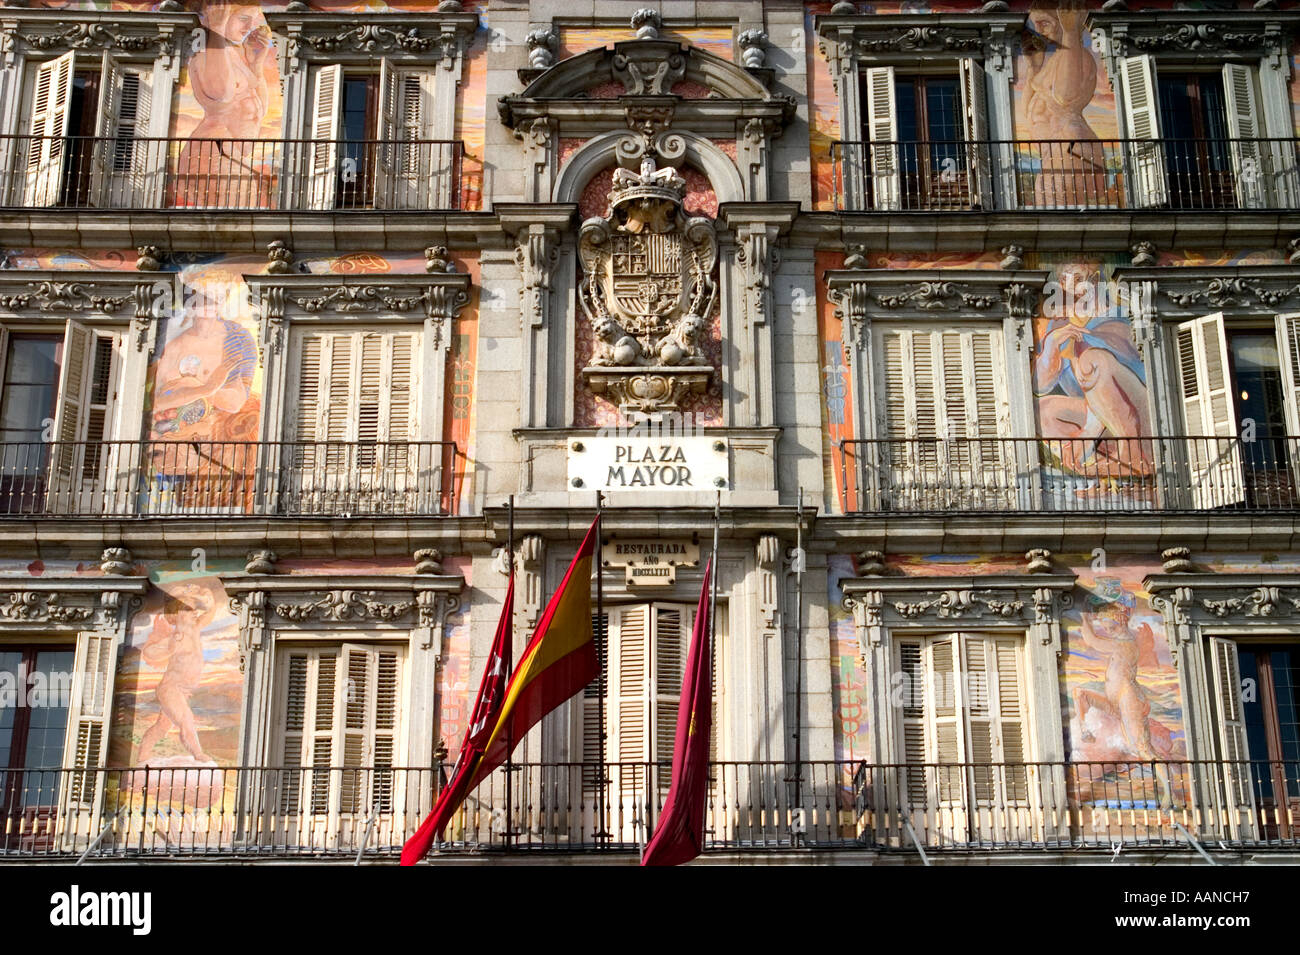 Casa de la Panaderia avec ses peintures allégoriques à Plaza Mayor Madrid Espagne Banque D'Images